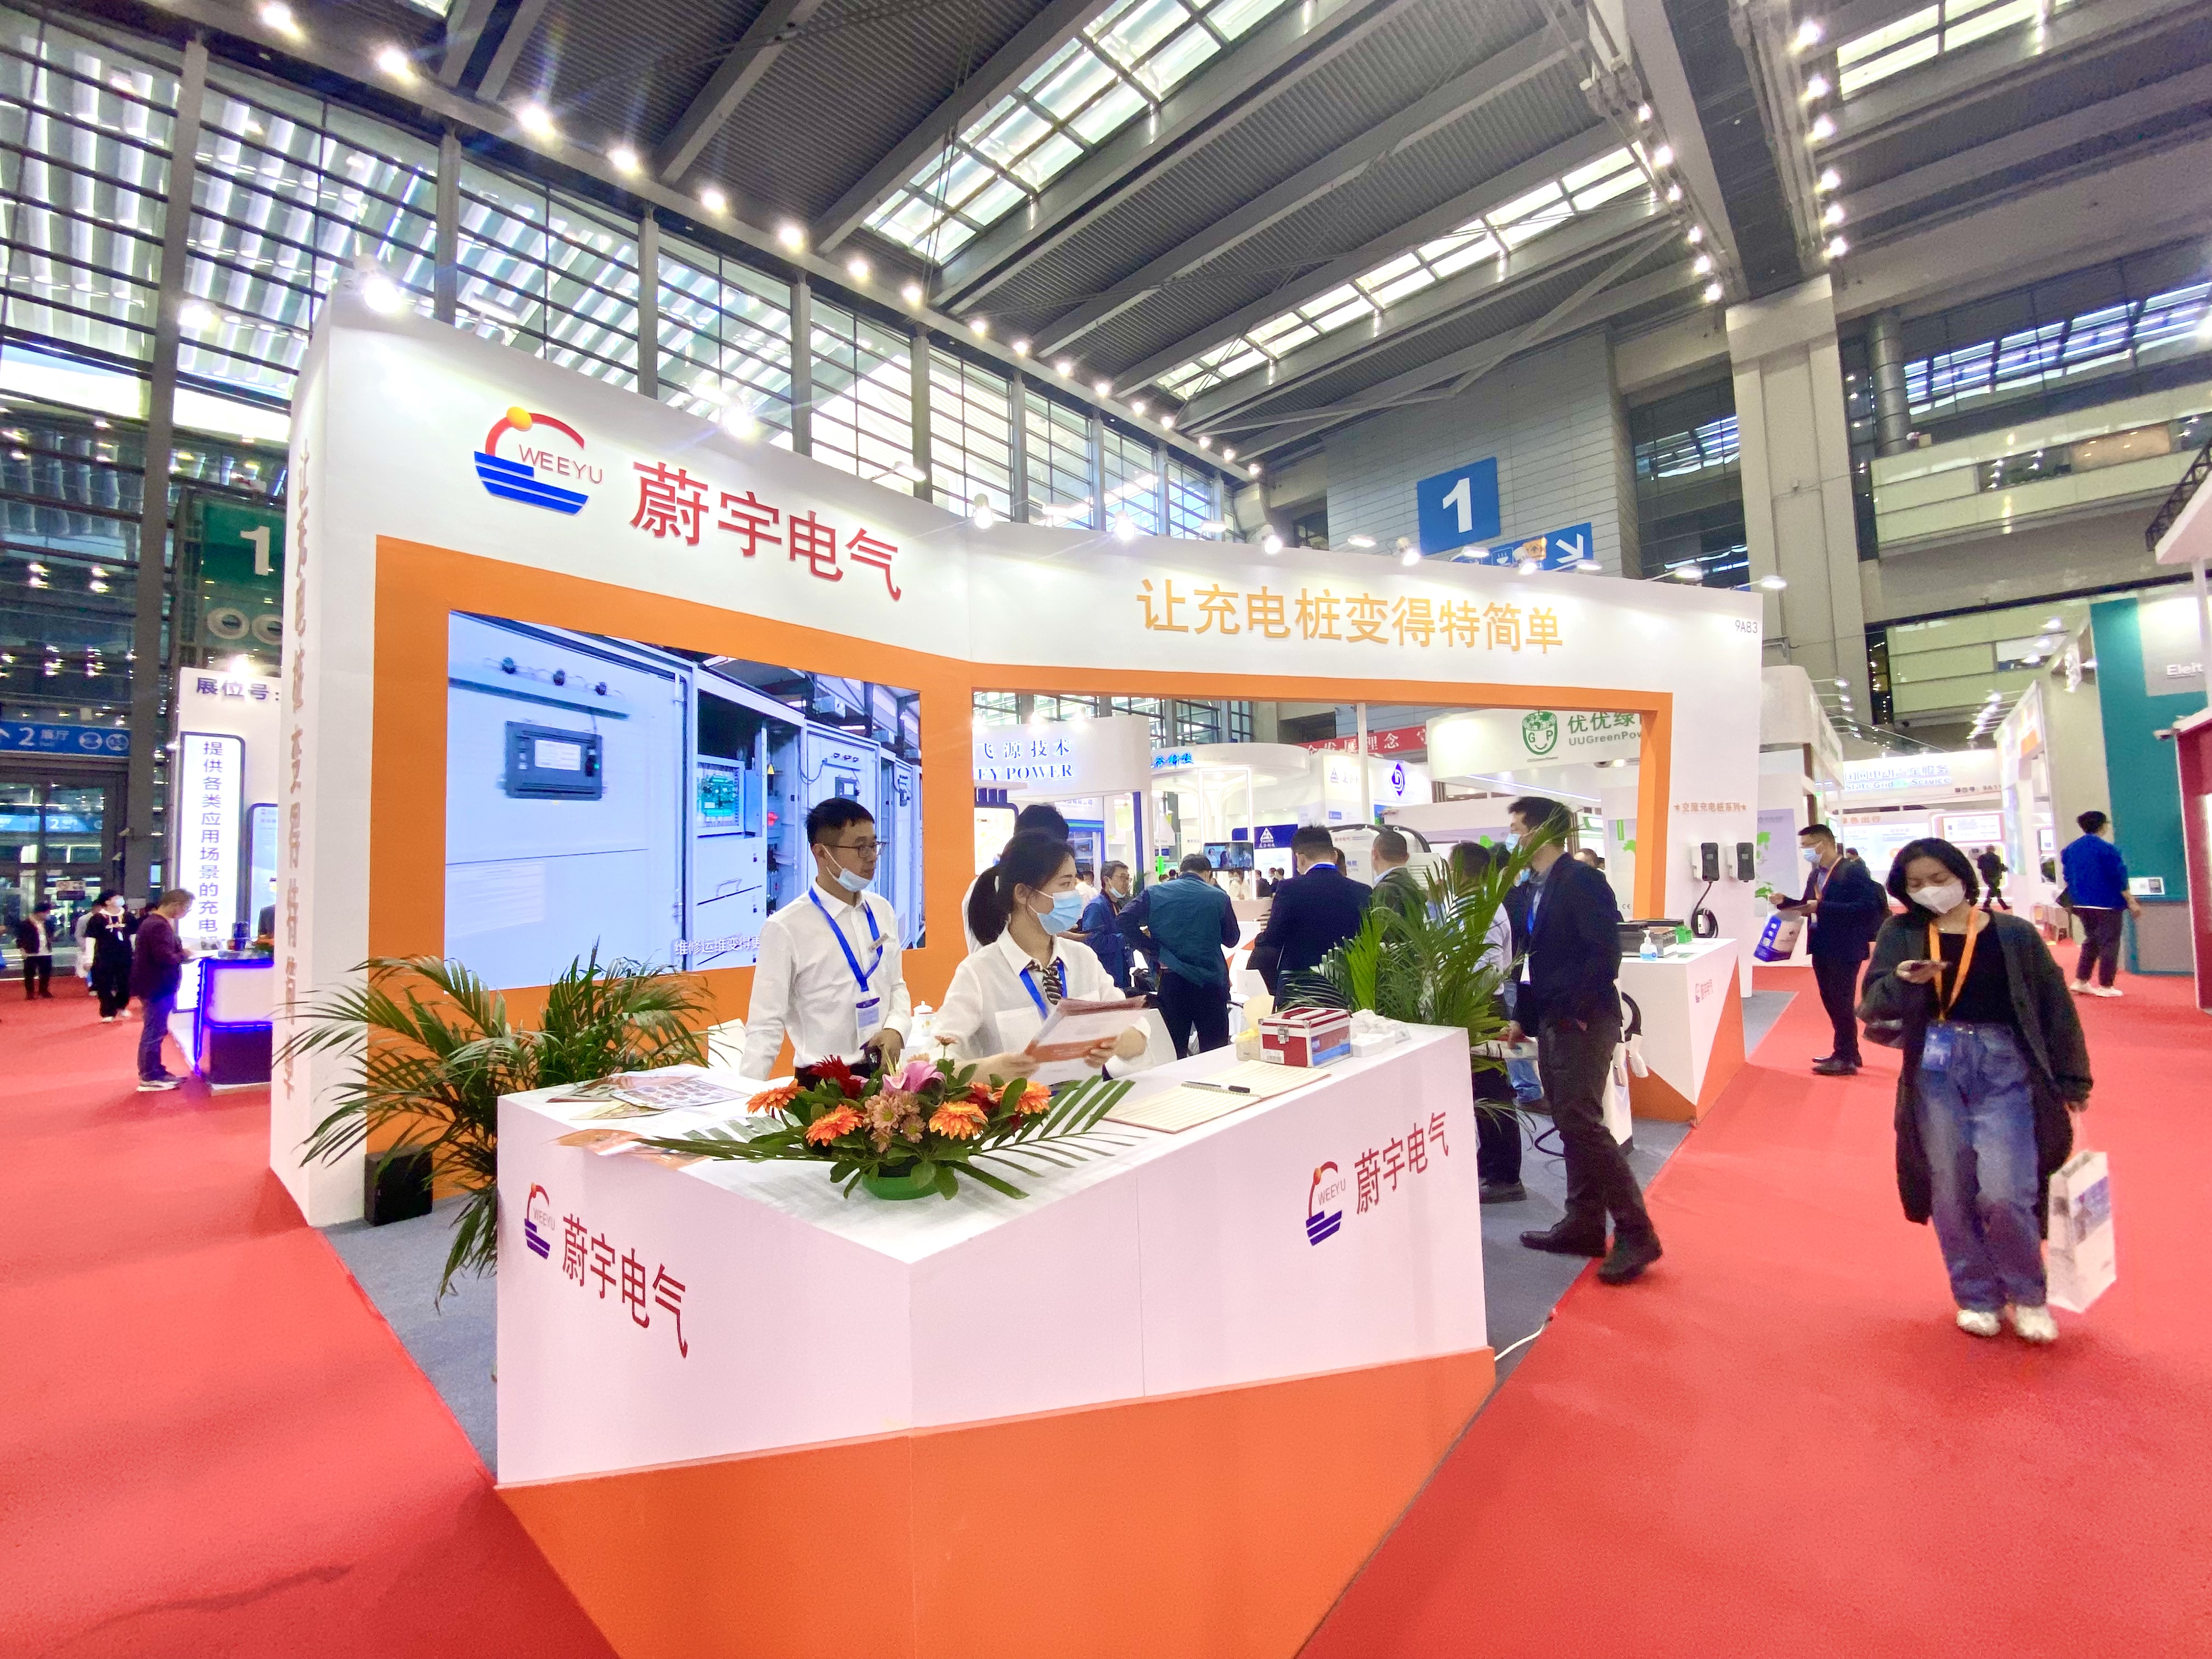 Weeyu Electric блеска на изложбата за технологија за технолошка опрема во Шенжен меѓународна станица за полнење